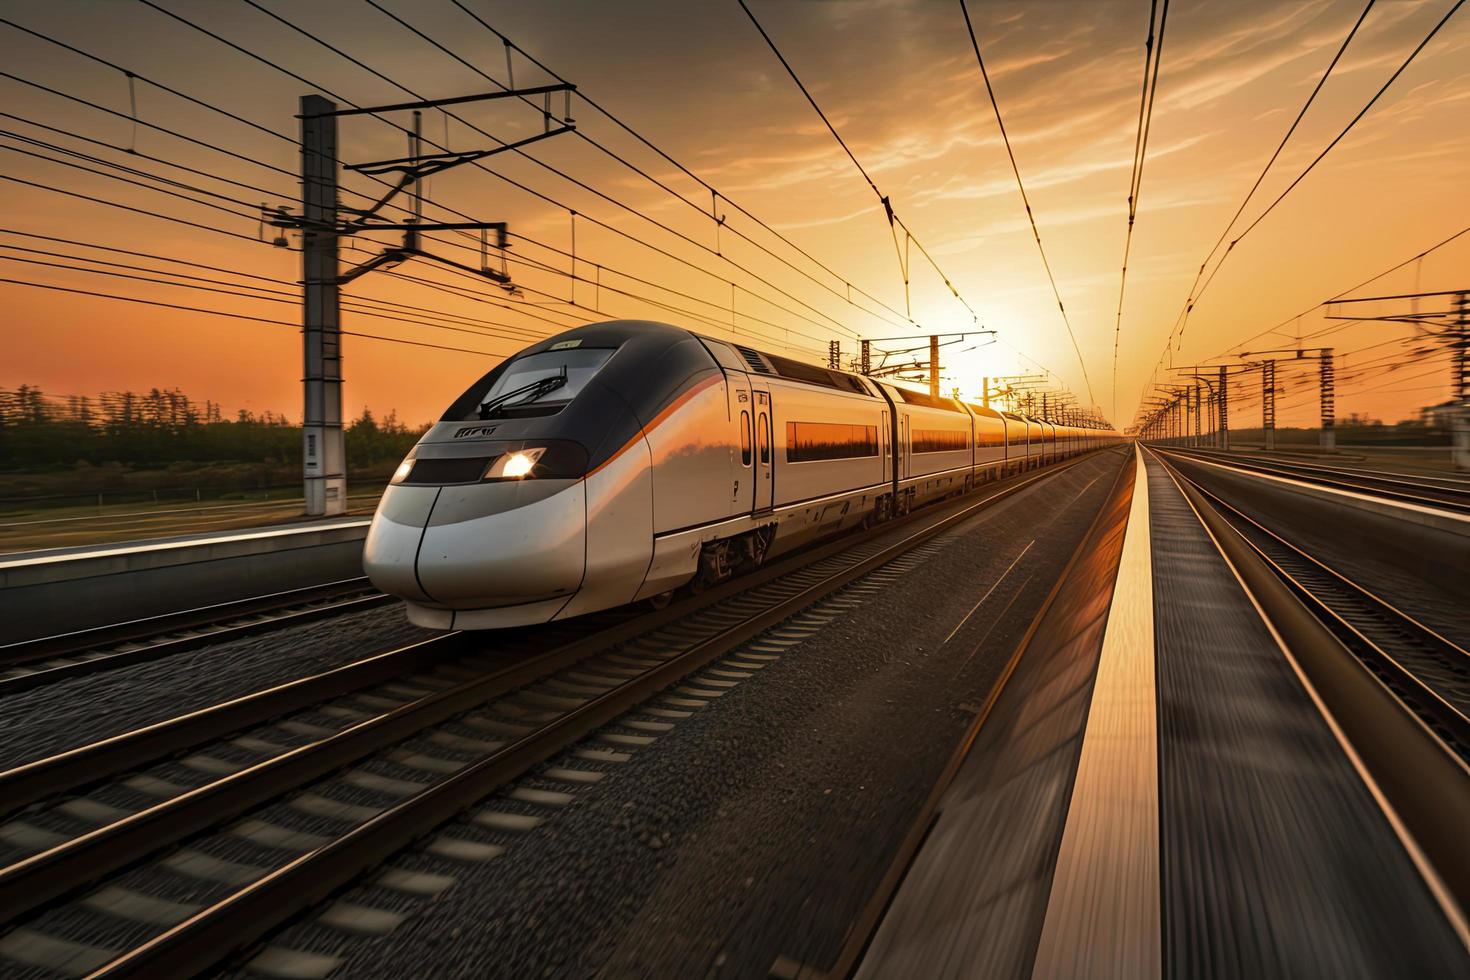 haute la vitesse train dans mouvement sur le chemin de fer station à le coucher du soleil photo